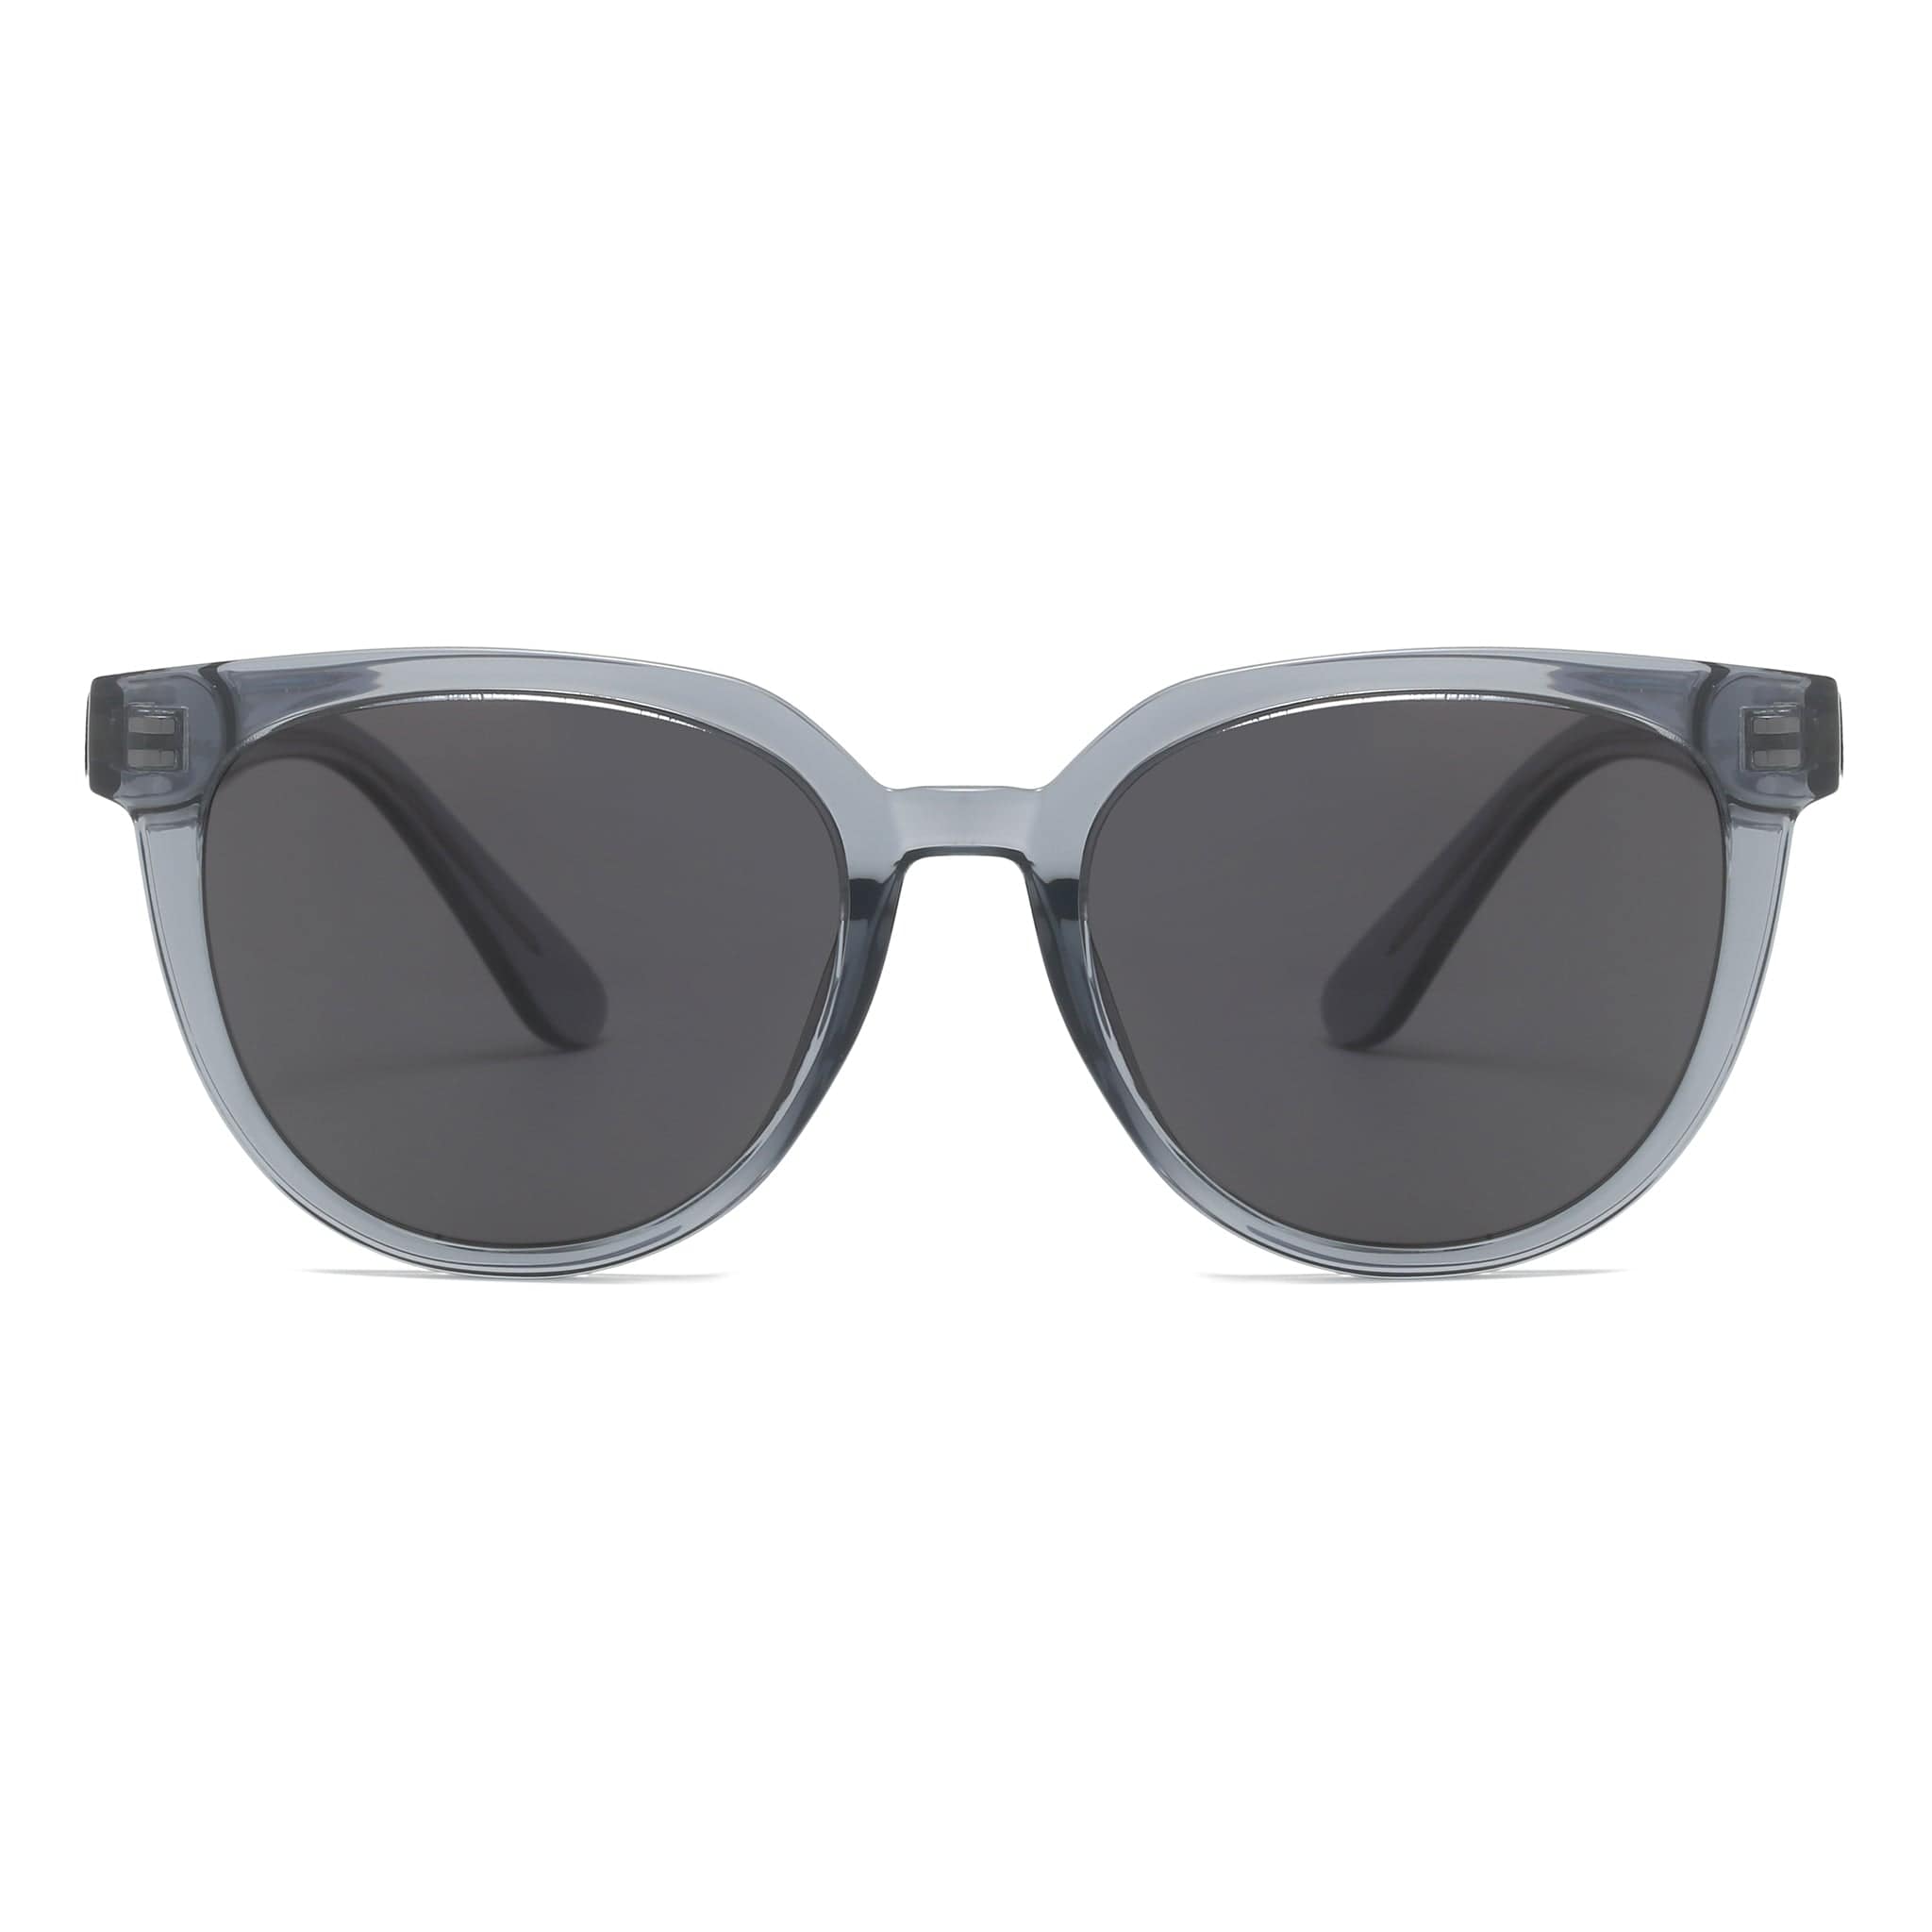 GIUSTIZIERI VECCHI Sunglasses Small / Sea Glass Grey Jetsetter Wayfarer Duo